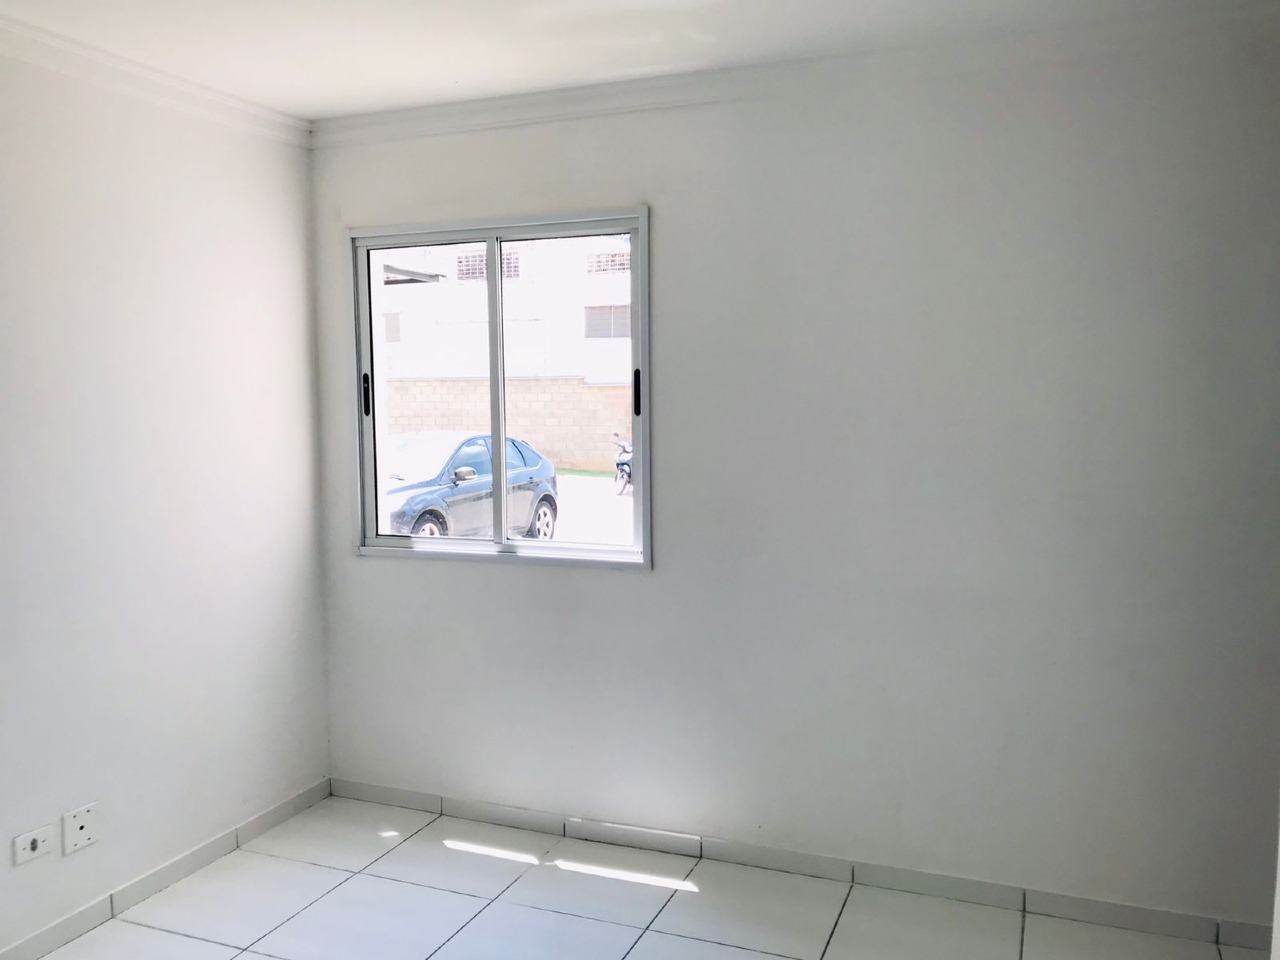 Apartamento à venda, 2 quartos, 1 vaga, no bairro Glebas Califórnia em Piracicaba - SP